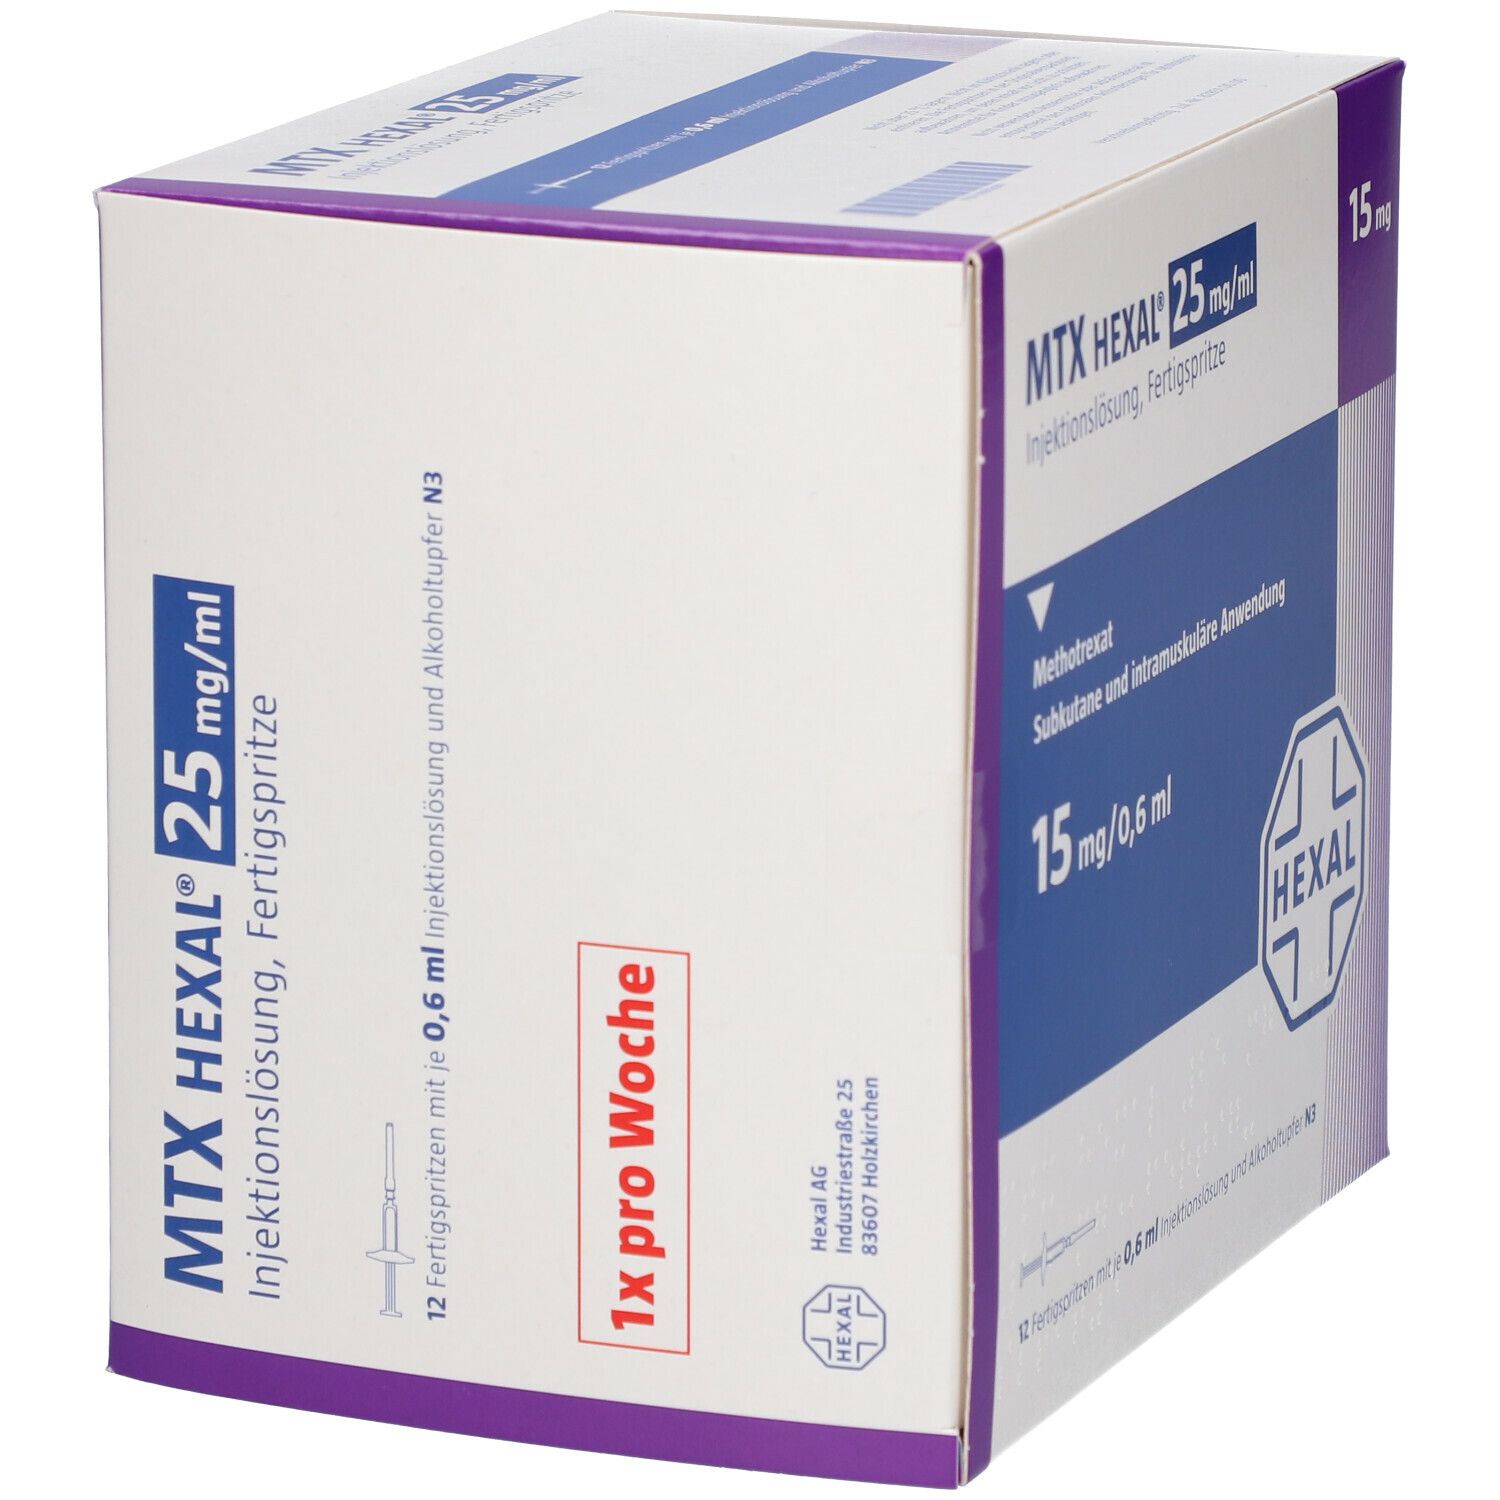 MTX HEXAL® 25 mg/ml 15 mg